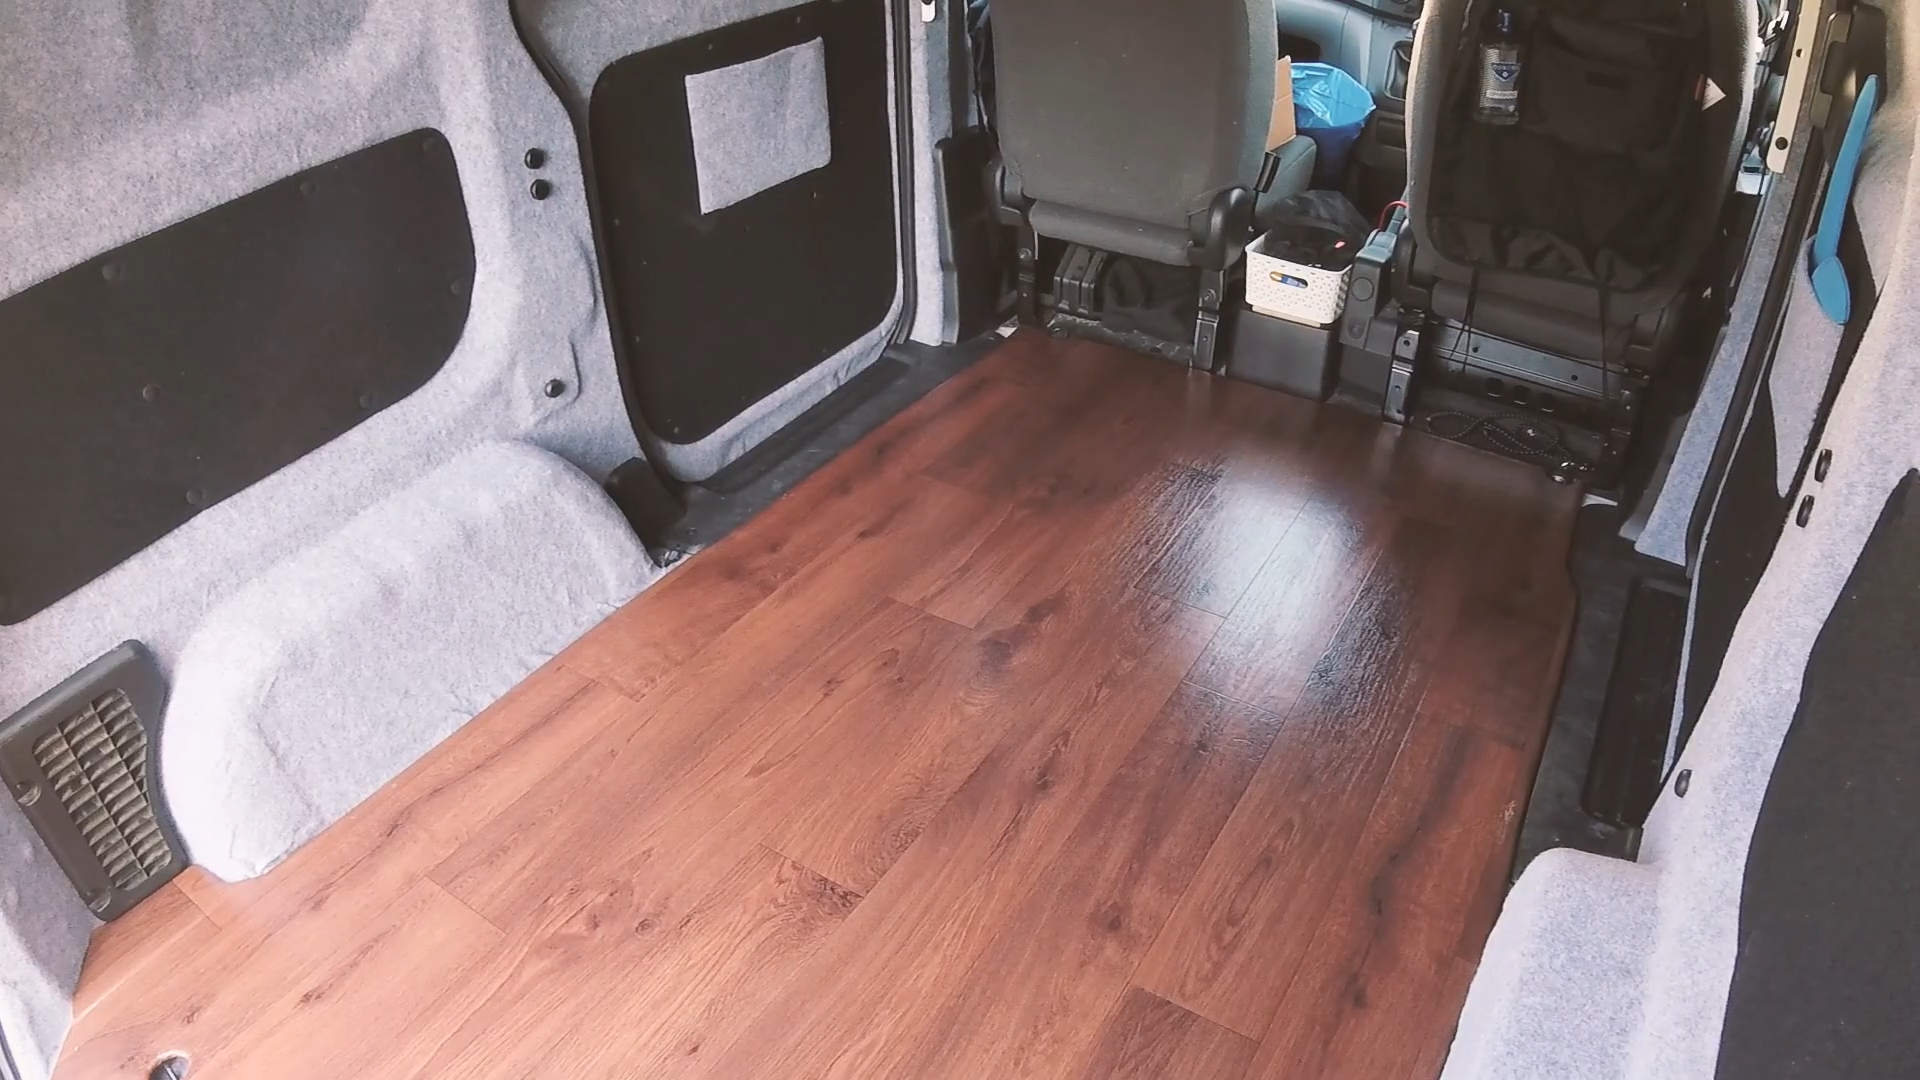 The vinyl-covered van floor in the van